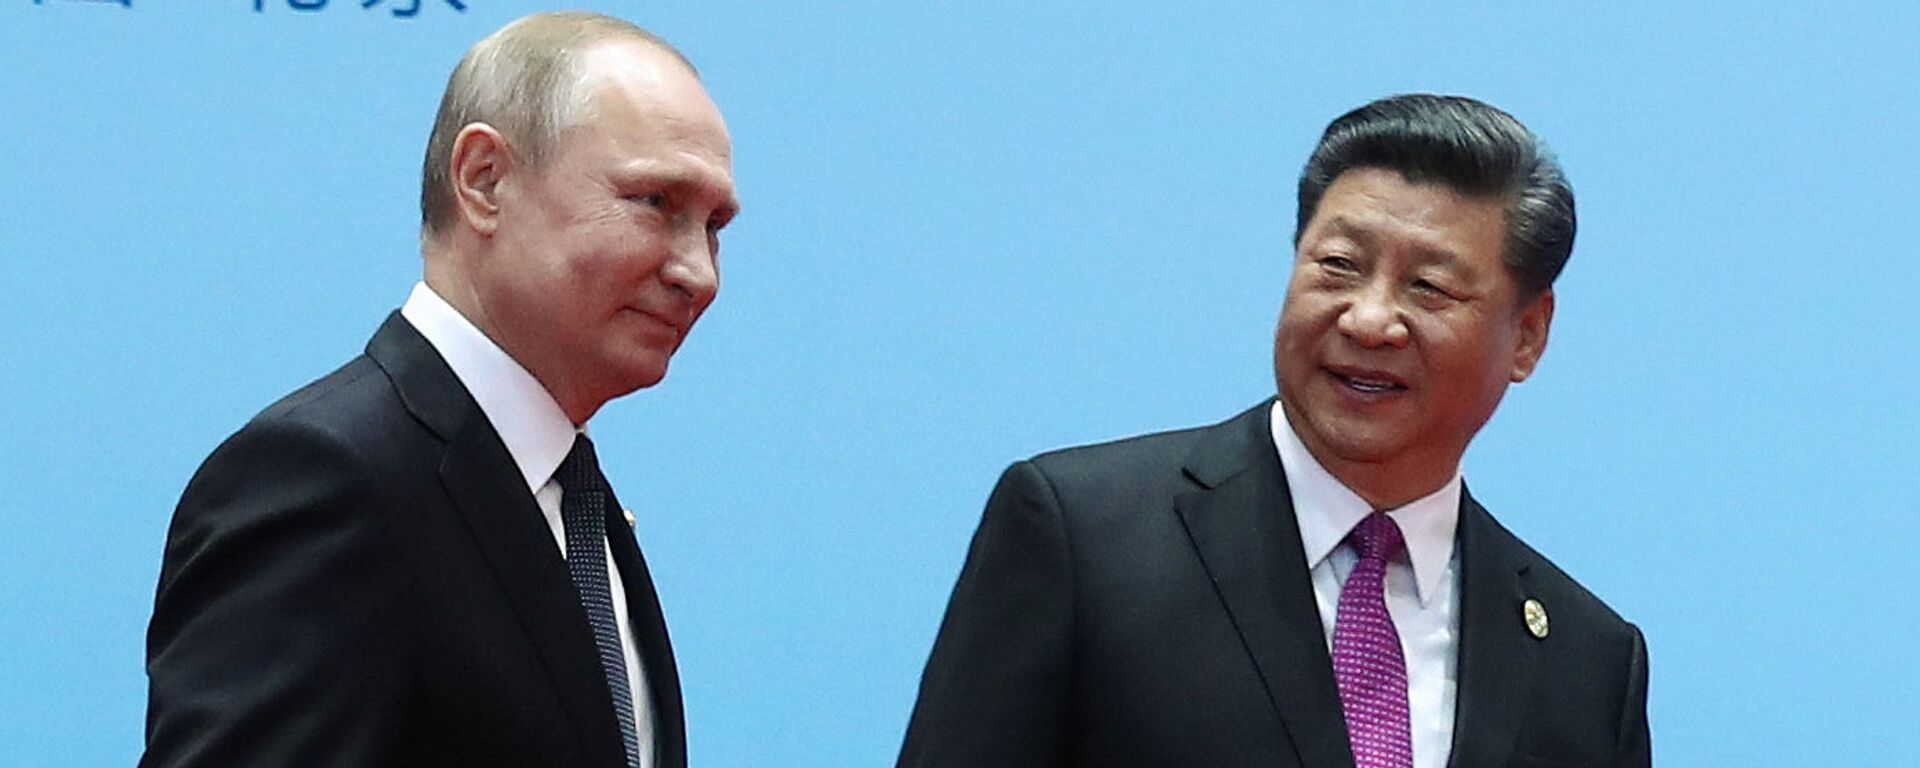 El presidente de Rusia, Vladímir Putin, y el presidente de China, Xi Jinping - Sputnik Mundo, 1920, 03.10.2020